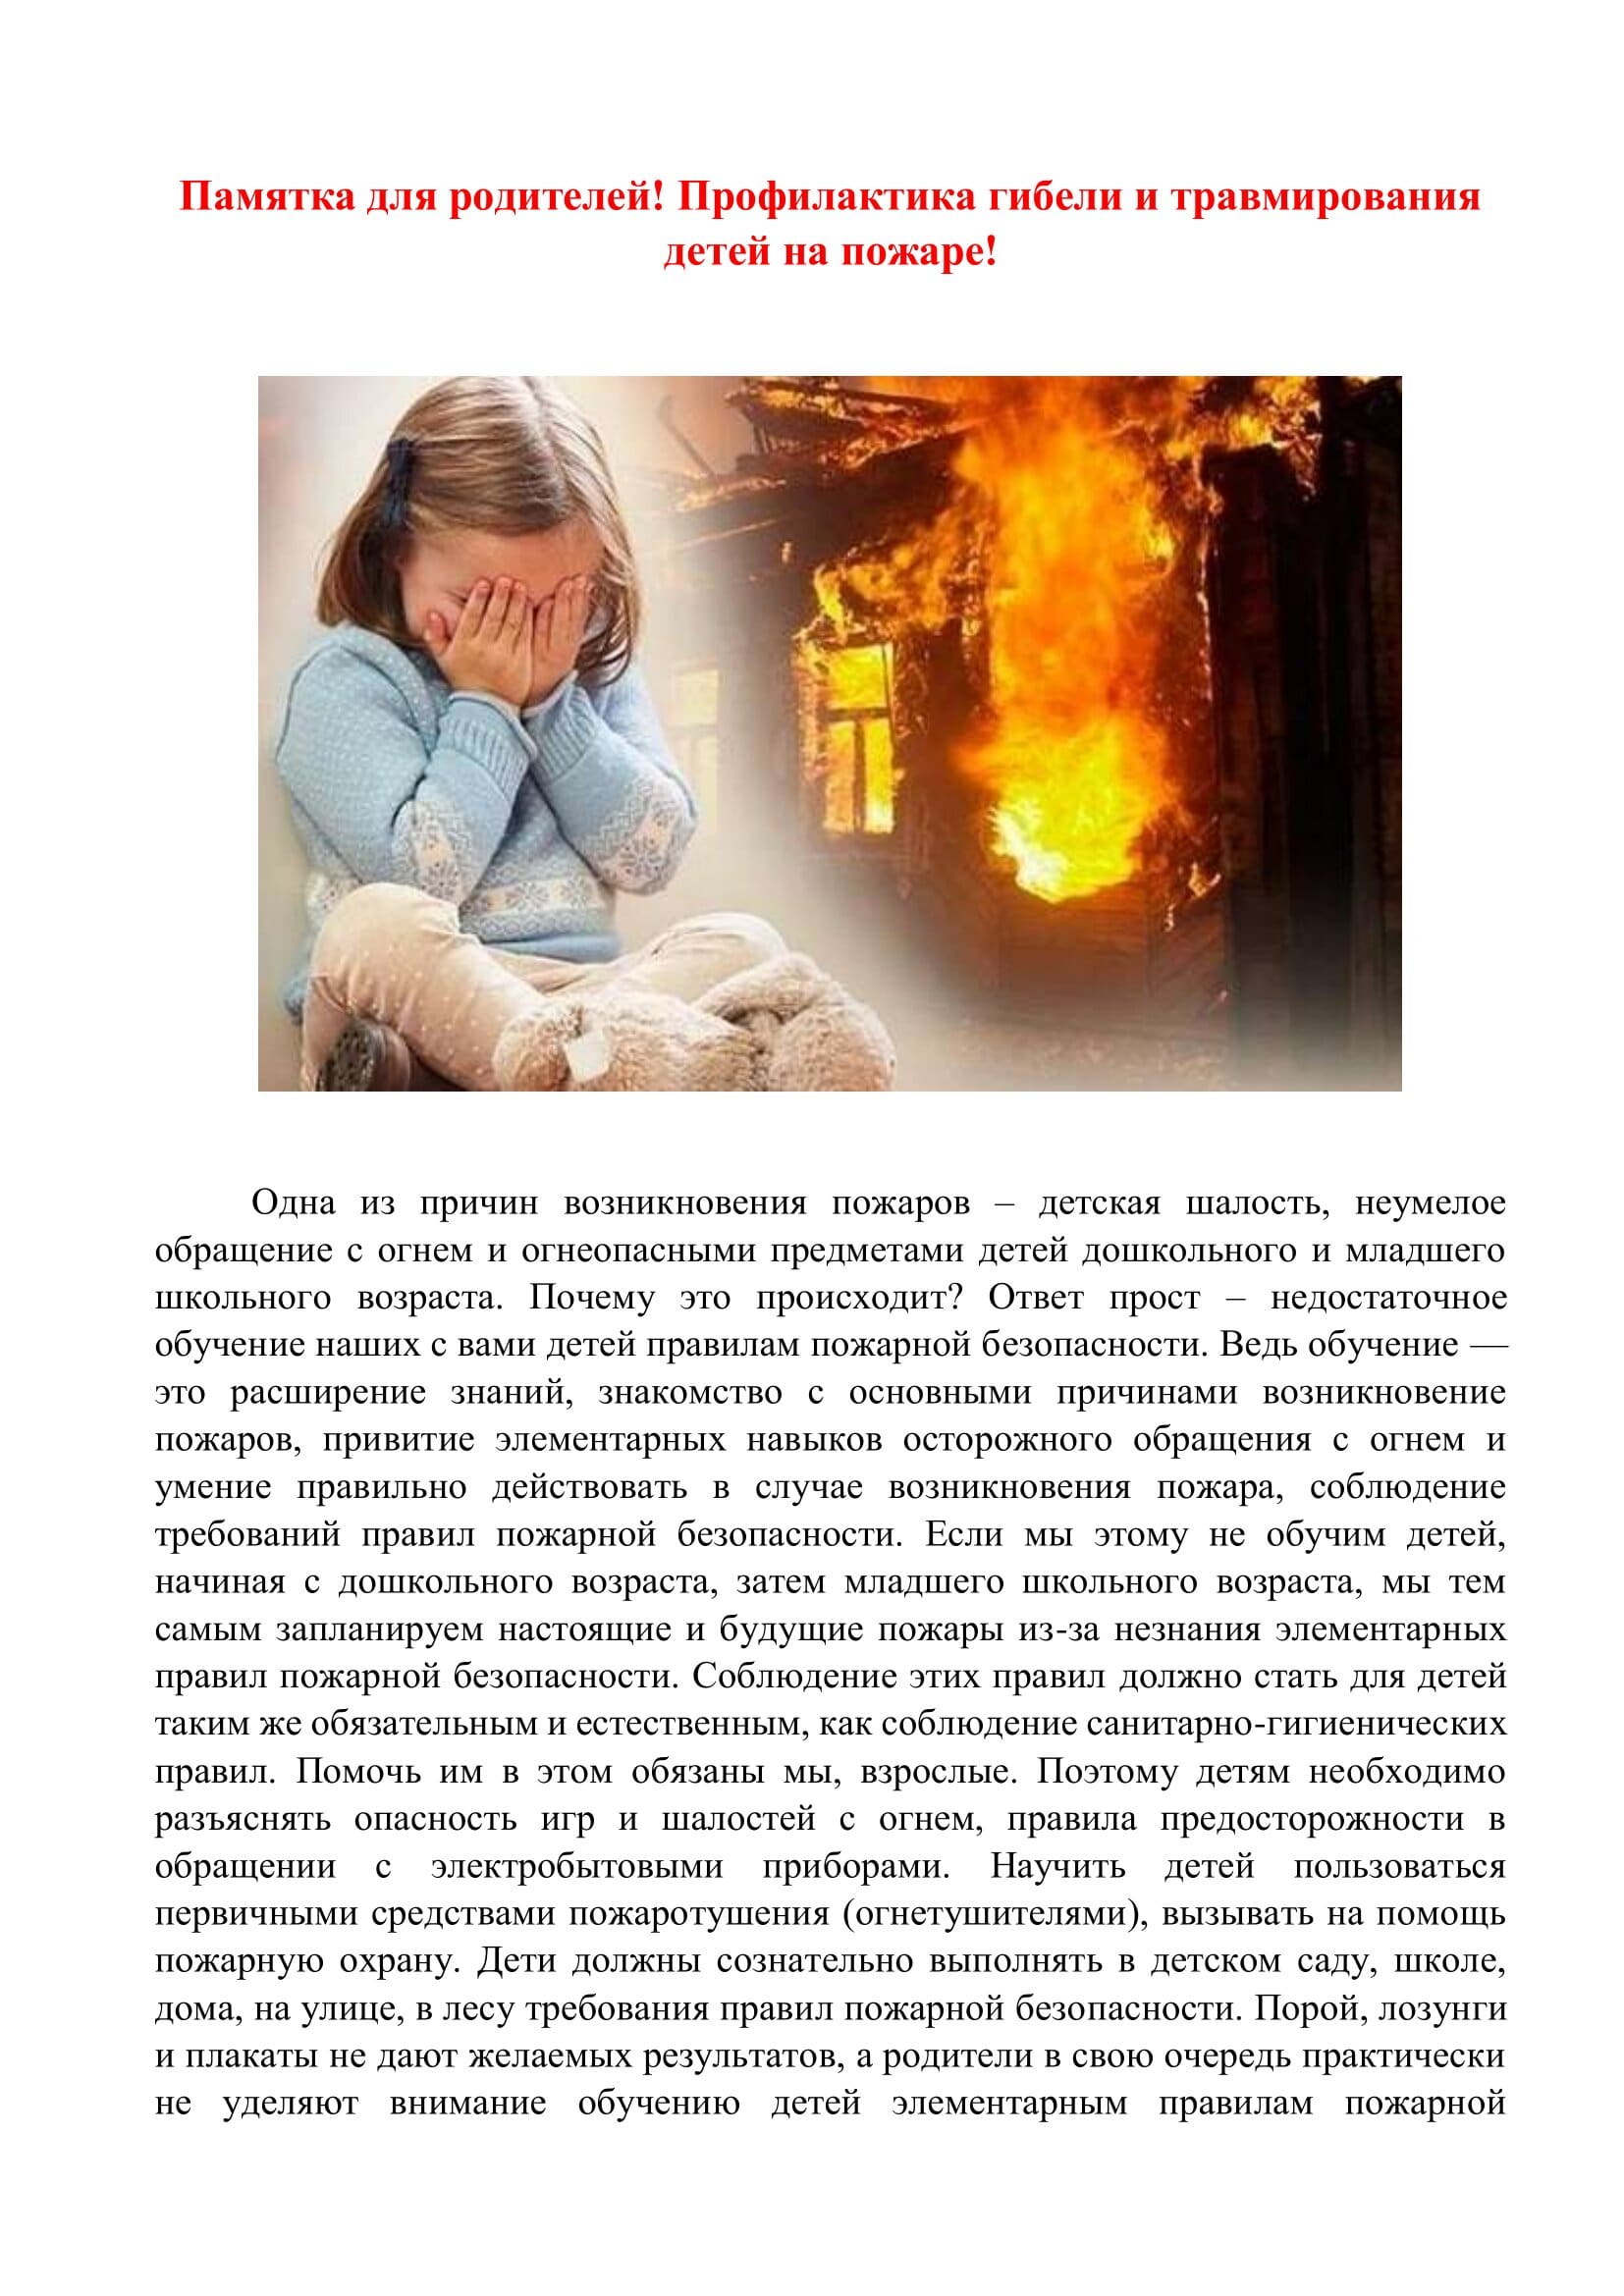 Профилактика гибели детей на пожарах памятки